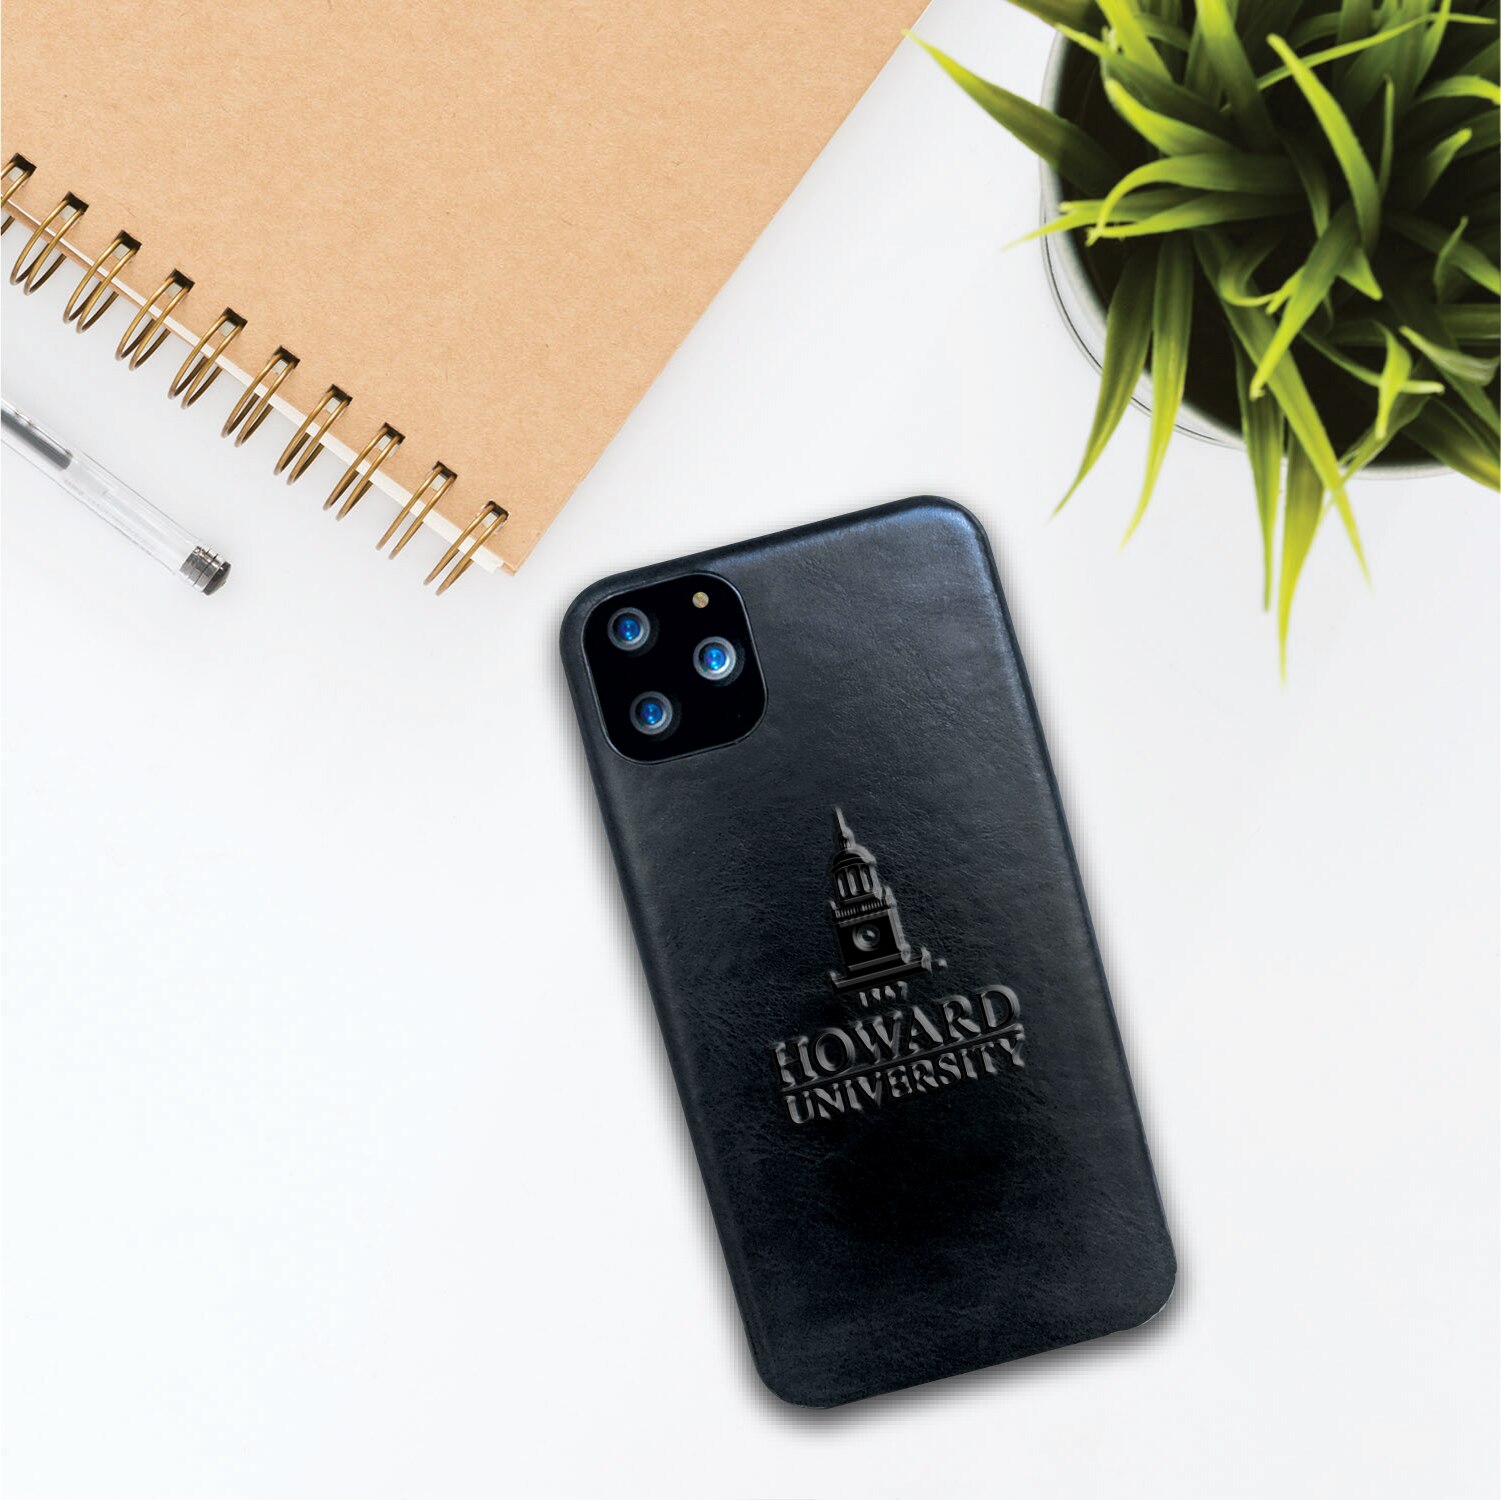 Howard University Leather Shell Phone Case, Black, Alumni V2 - iPhone 13 Pro